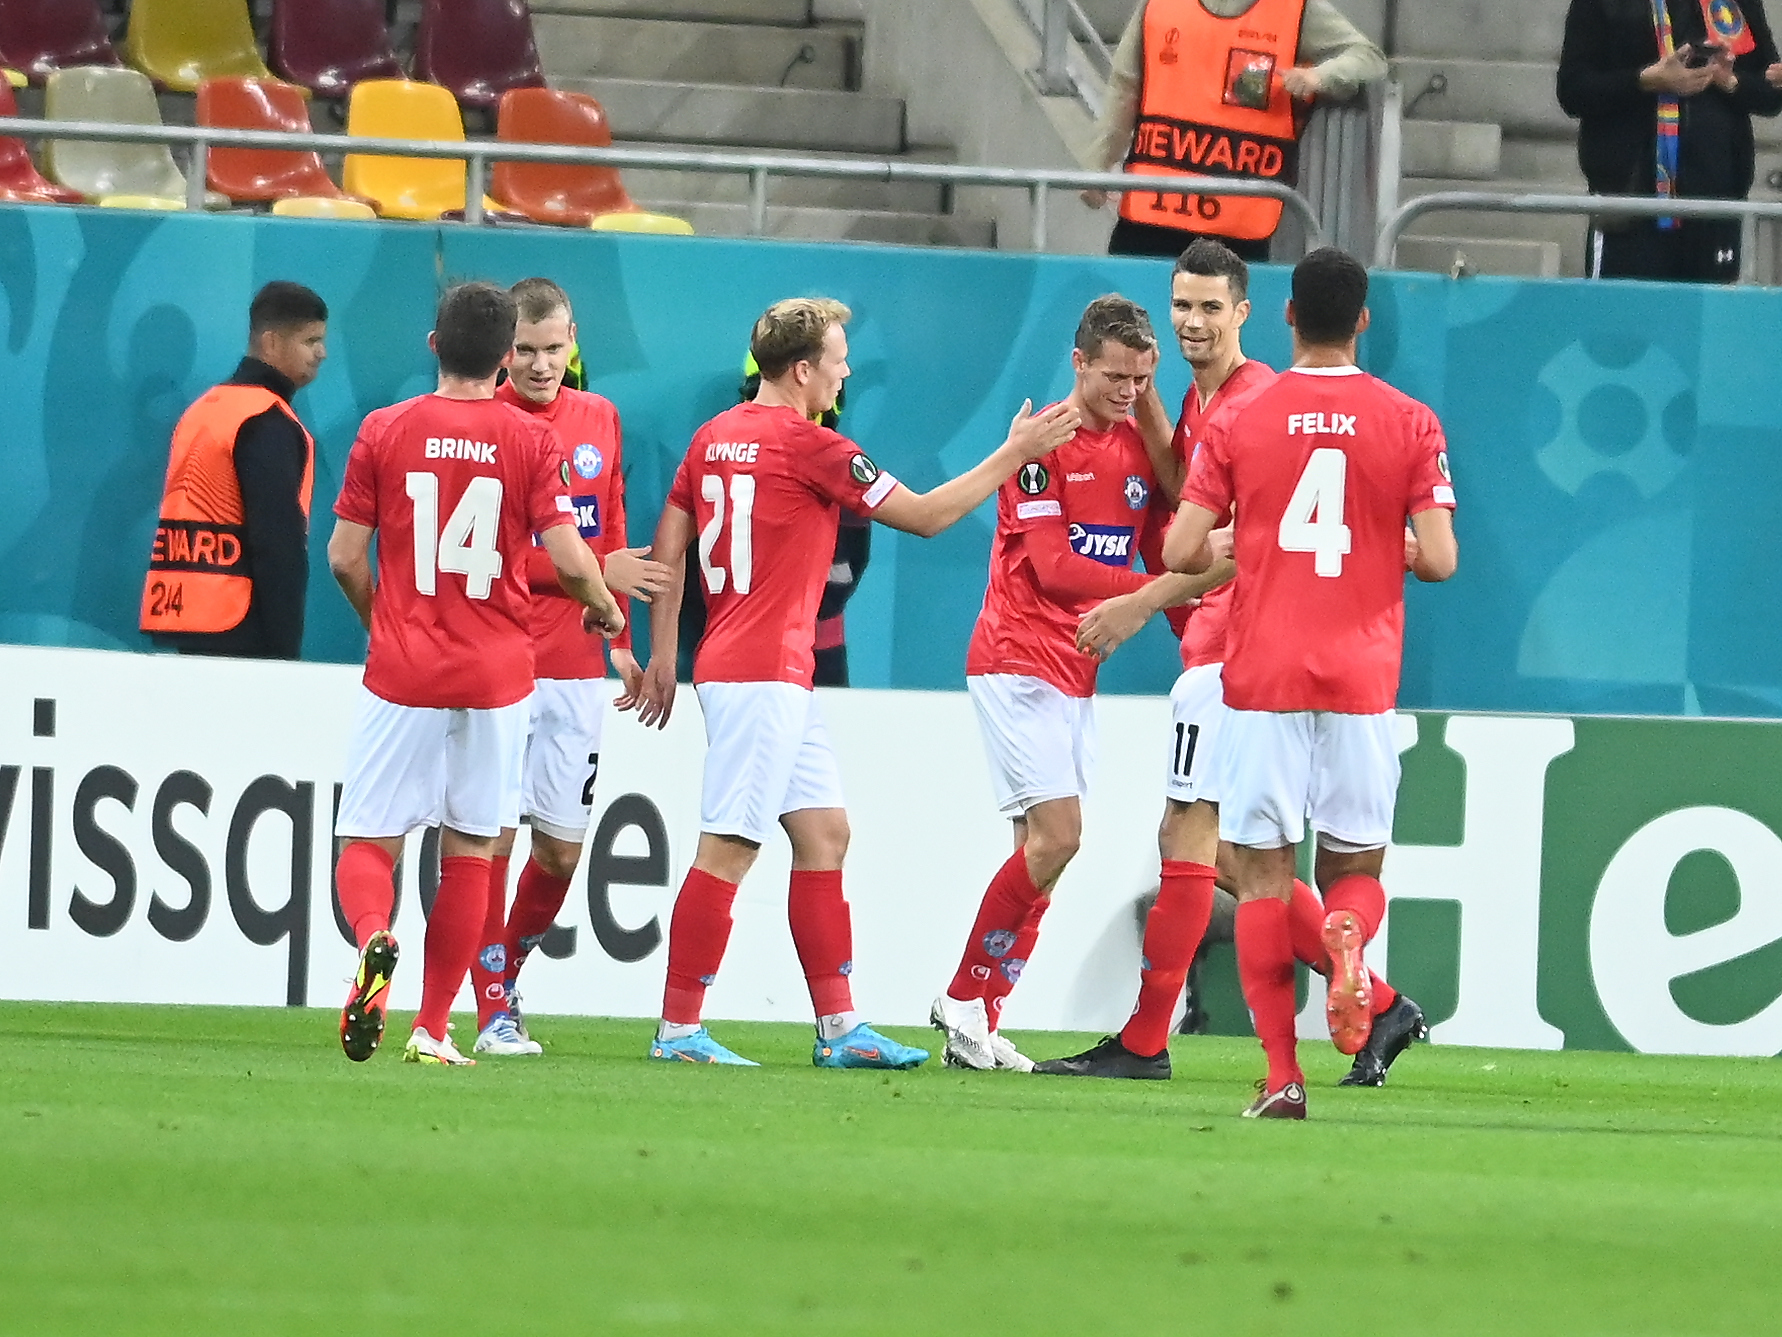 FCSB - Silkeborg 0-10, dublă ”manita”! Ilie Dumitrescu: ”Parcă o vedeam pe Liverpool” + Unde a greșit Dică